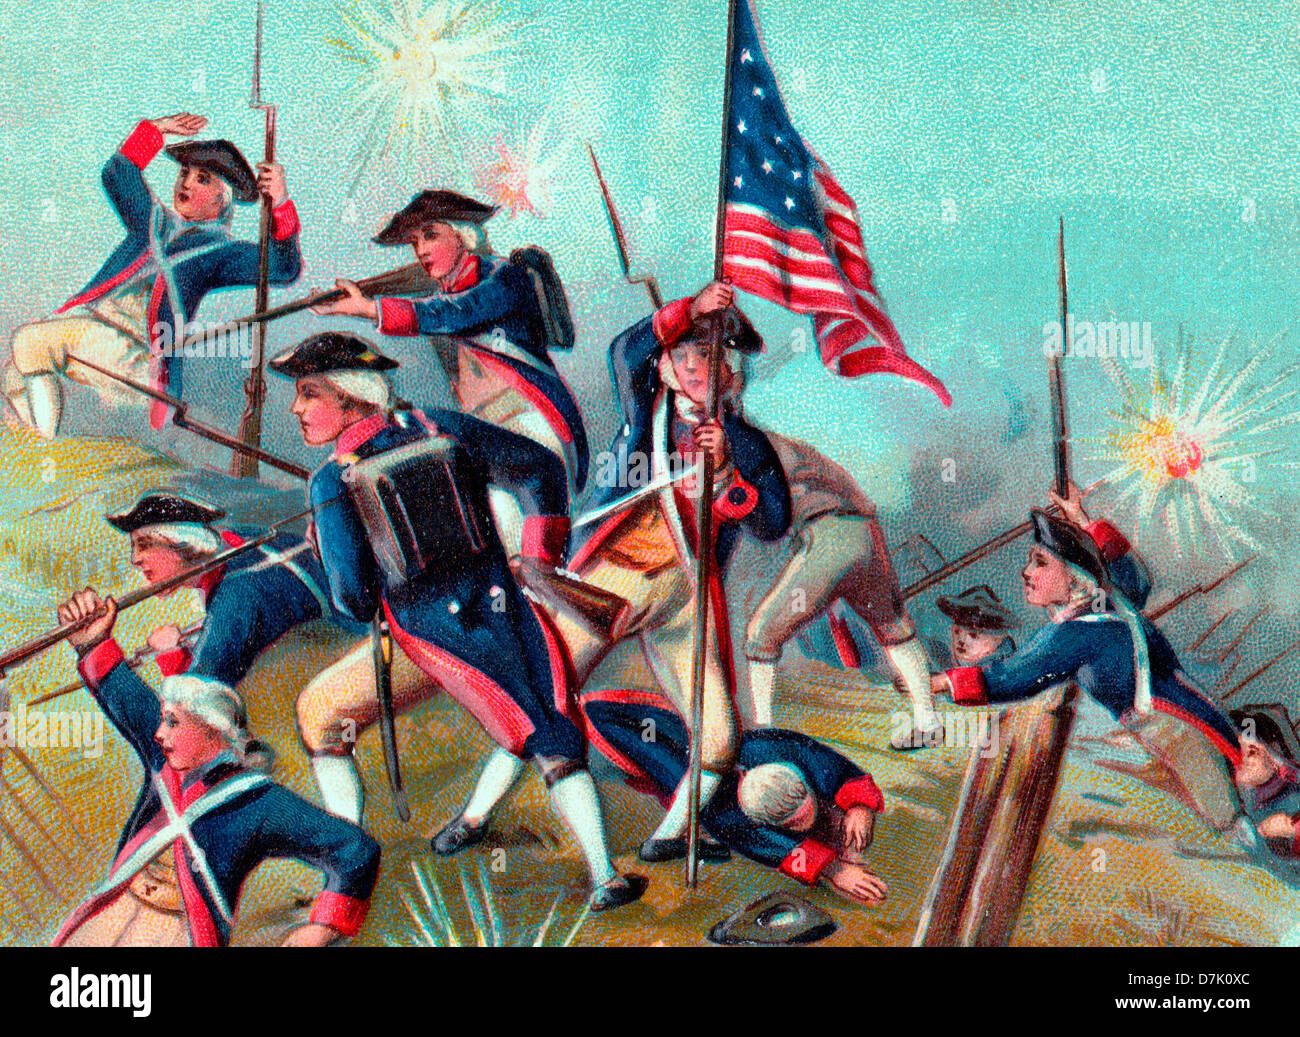 Die Schlacht von Bunker Hill während des Unabhängigkeitskrieges der USA - 17. Juni 1775 Stockfoto